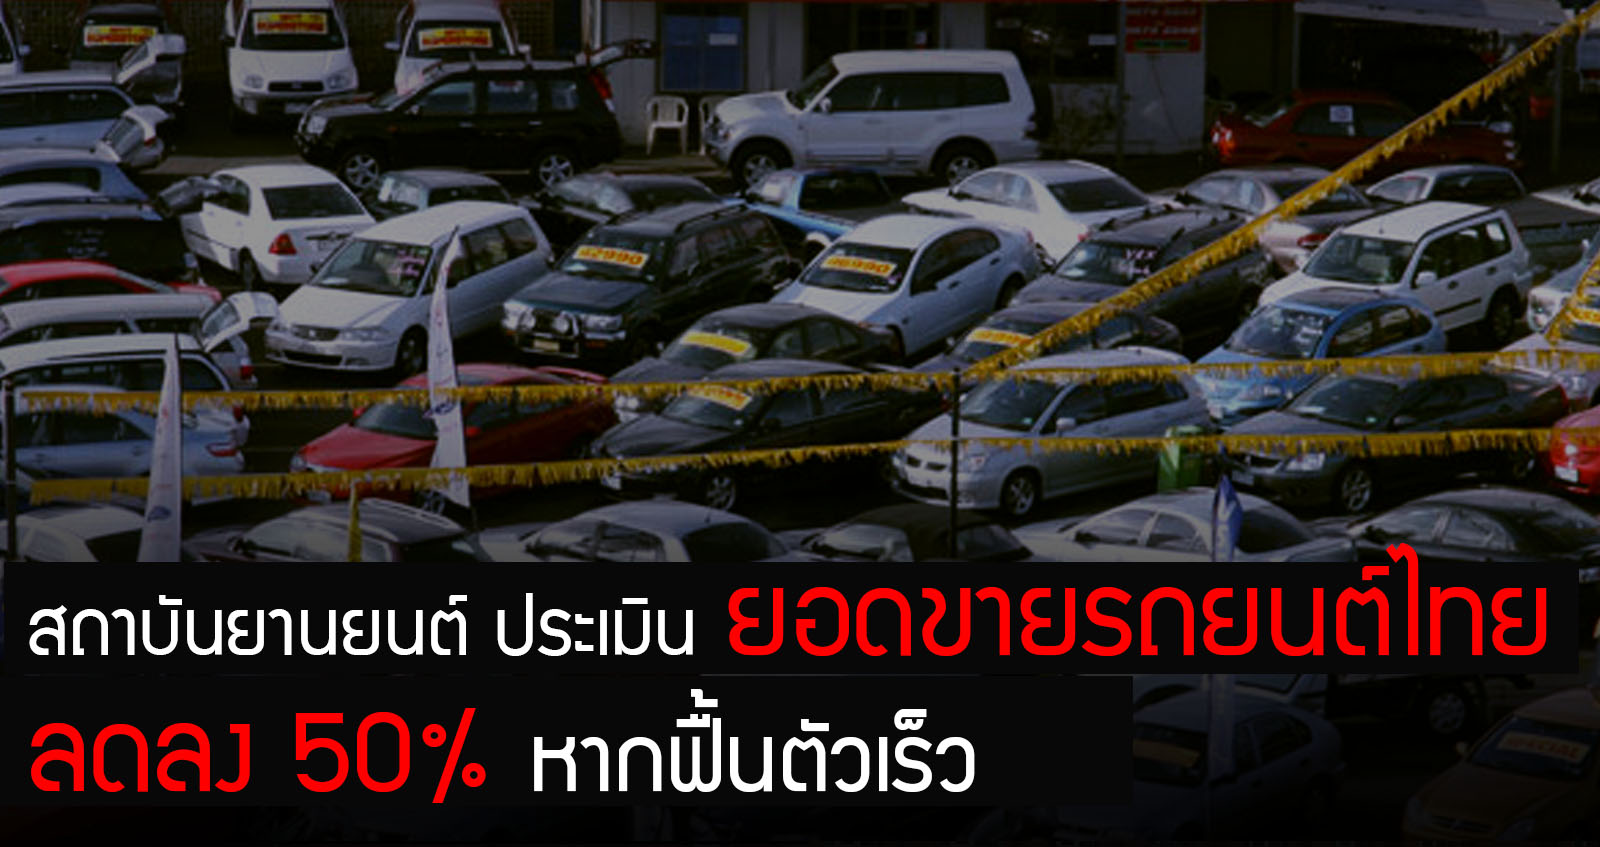 สถาบันยายนต์ หวั่นยอดขายในไทย ลด 50% หากฟื้นตัวเร็ว